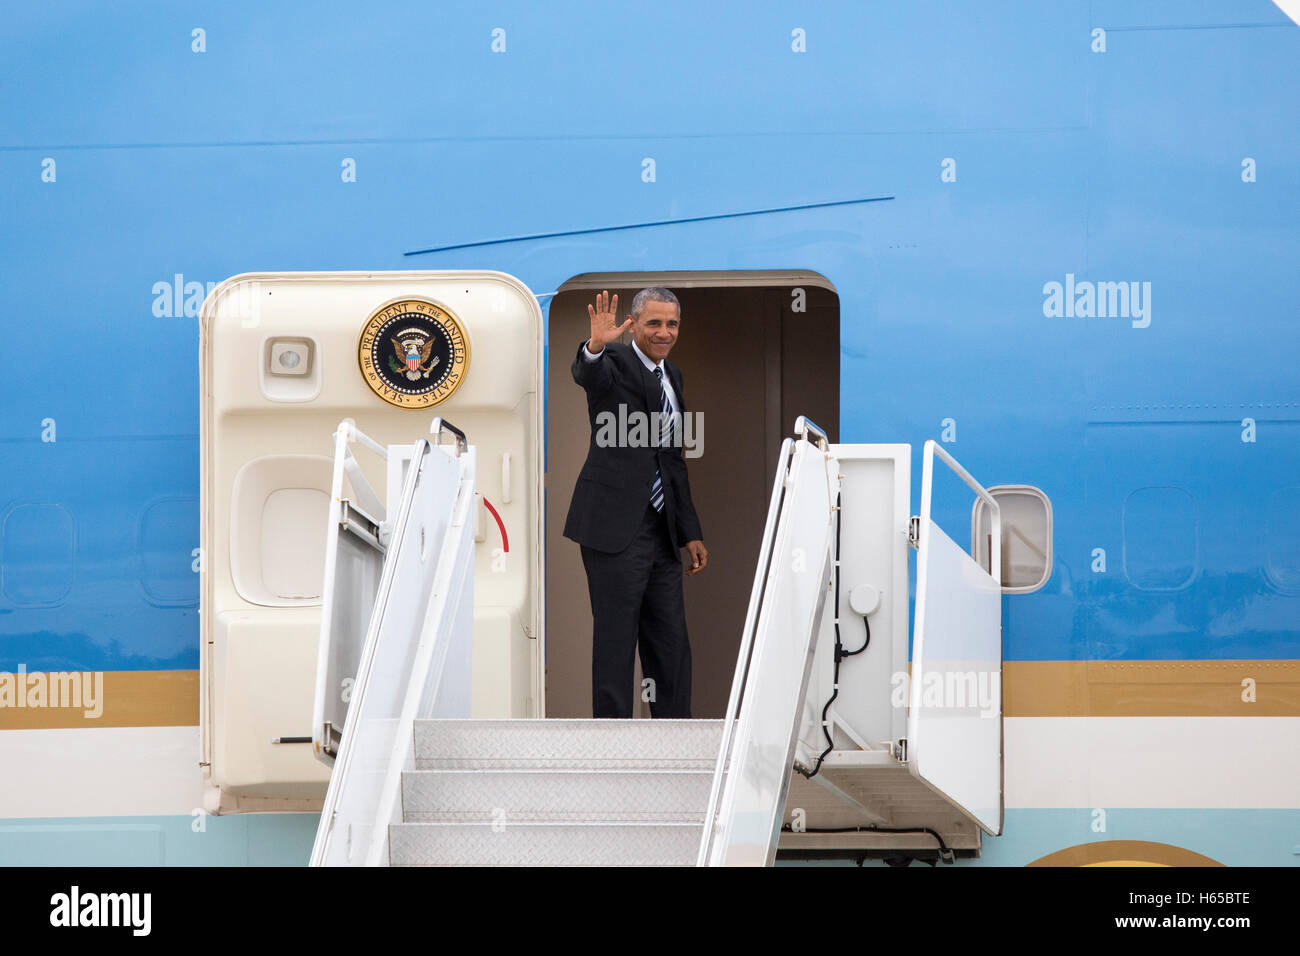 San Diego, Californie, USA. 24 Oct, 2016. Le président Barack Obama de quitter San Diego sur l'Air Force One de MCAS Base Mirmar le 24 octobre 2016 à San Diego, Californie. Crédit : l'accès Photo/Alamy Live News Banque D'Images